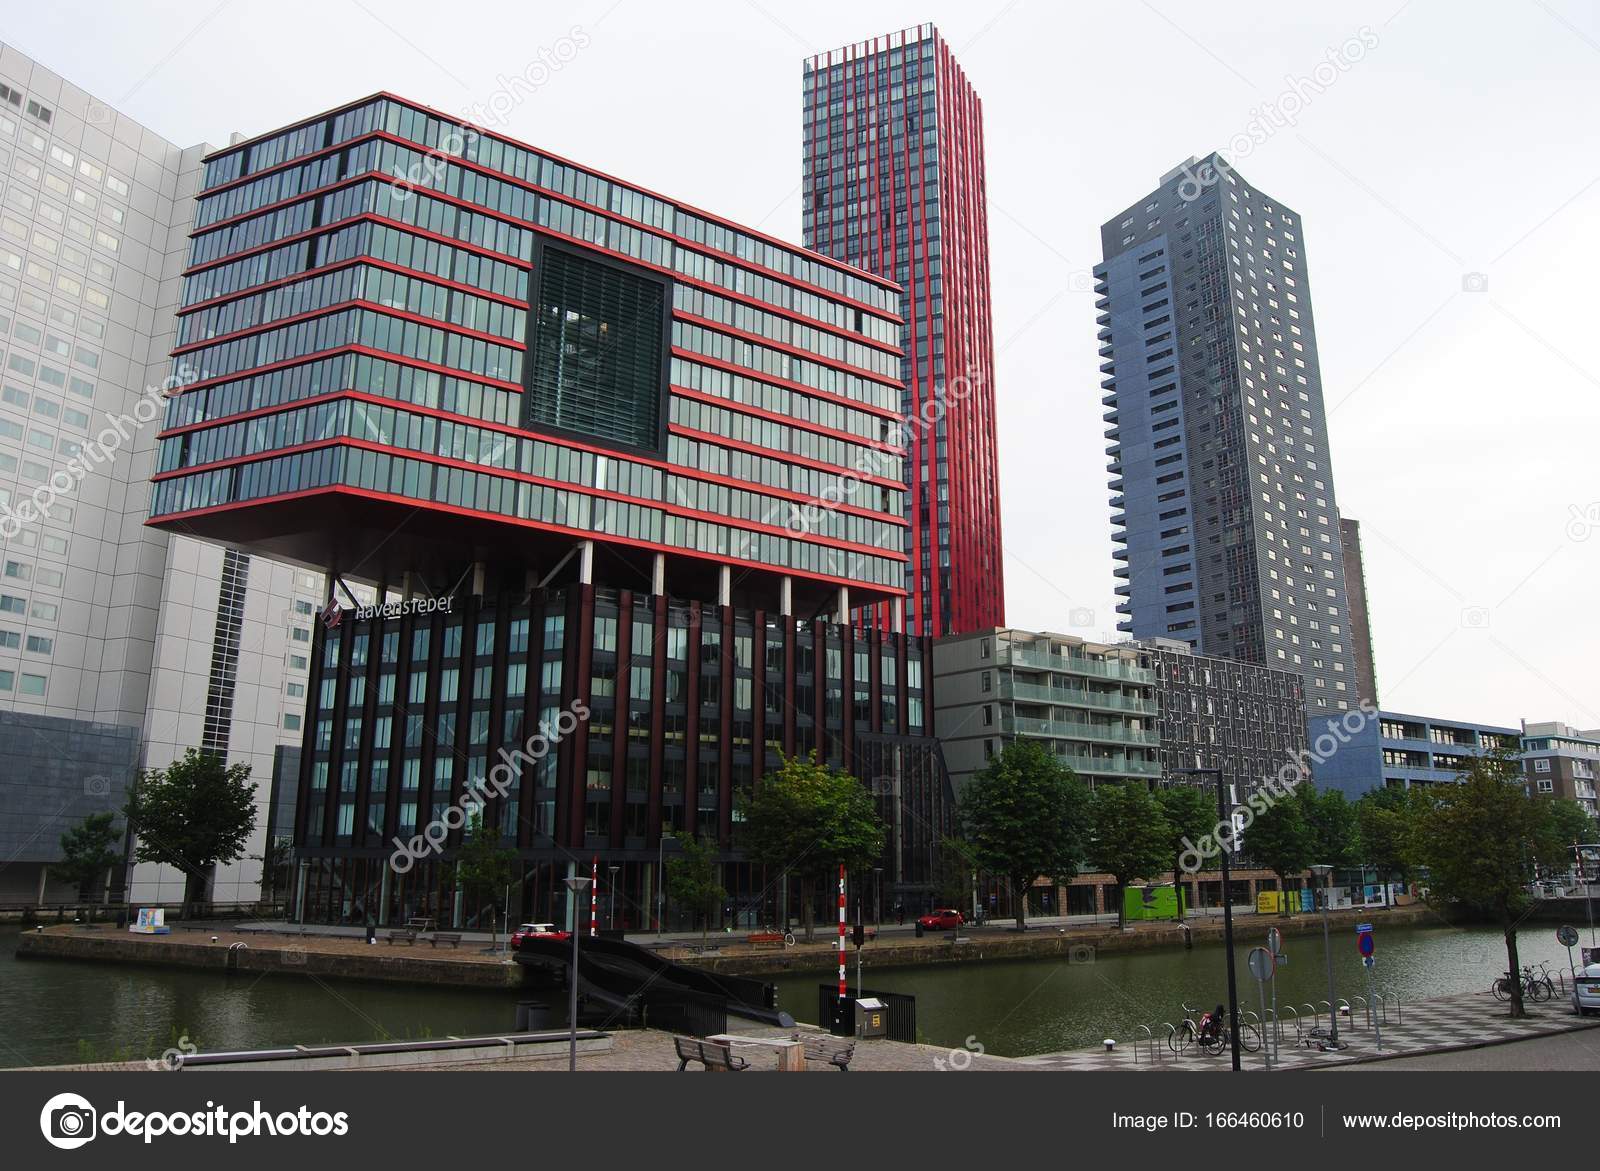 moderne architectuur in rotterdam - Redactionele stockfoto ...